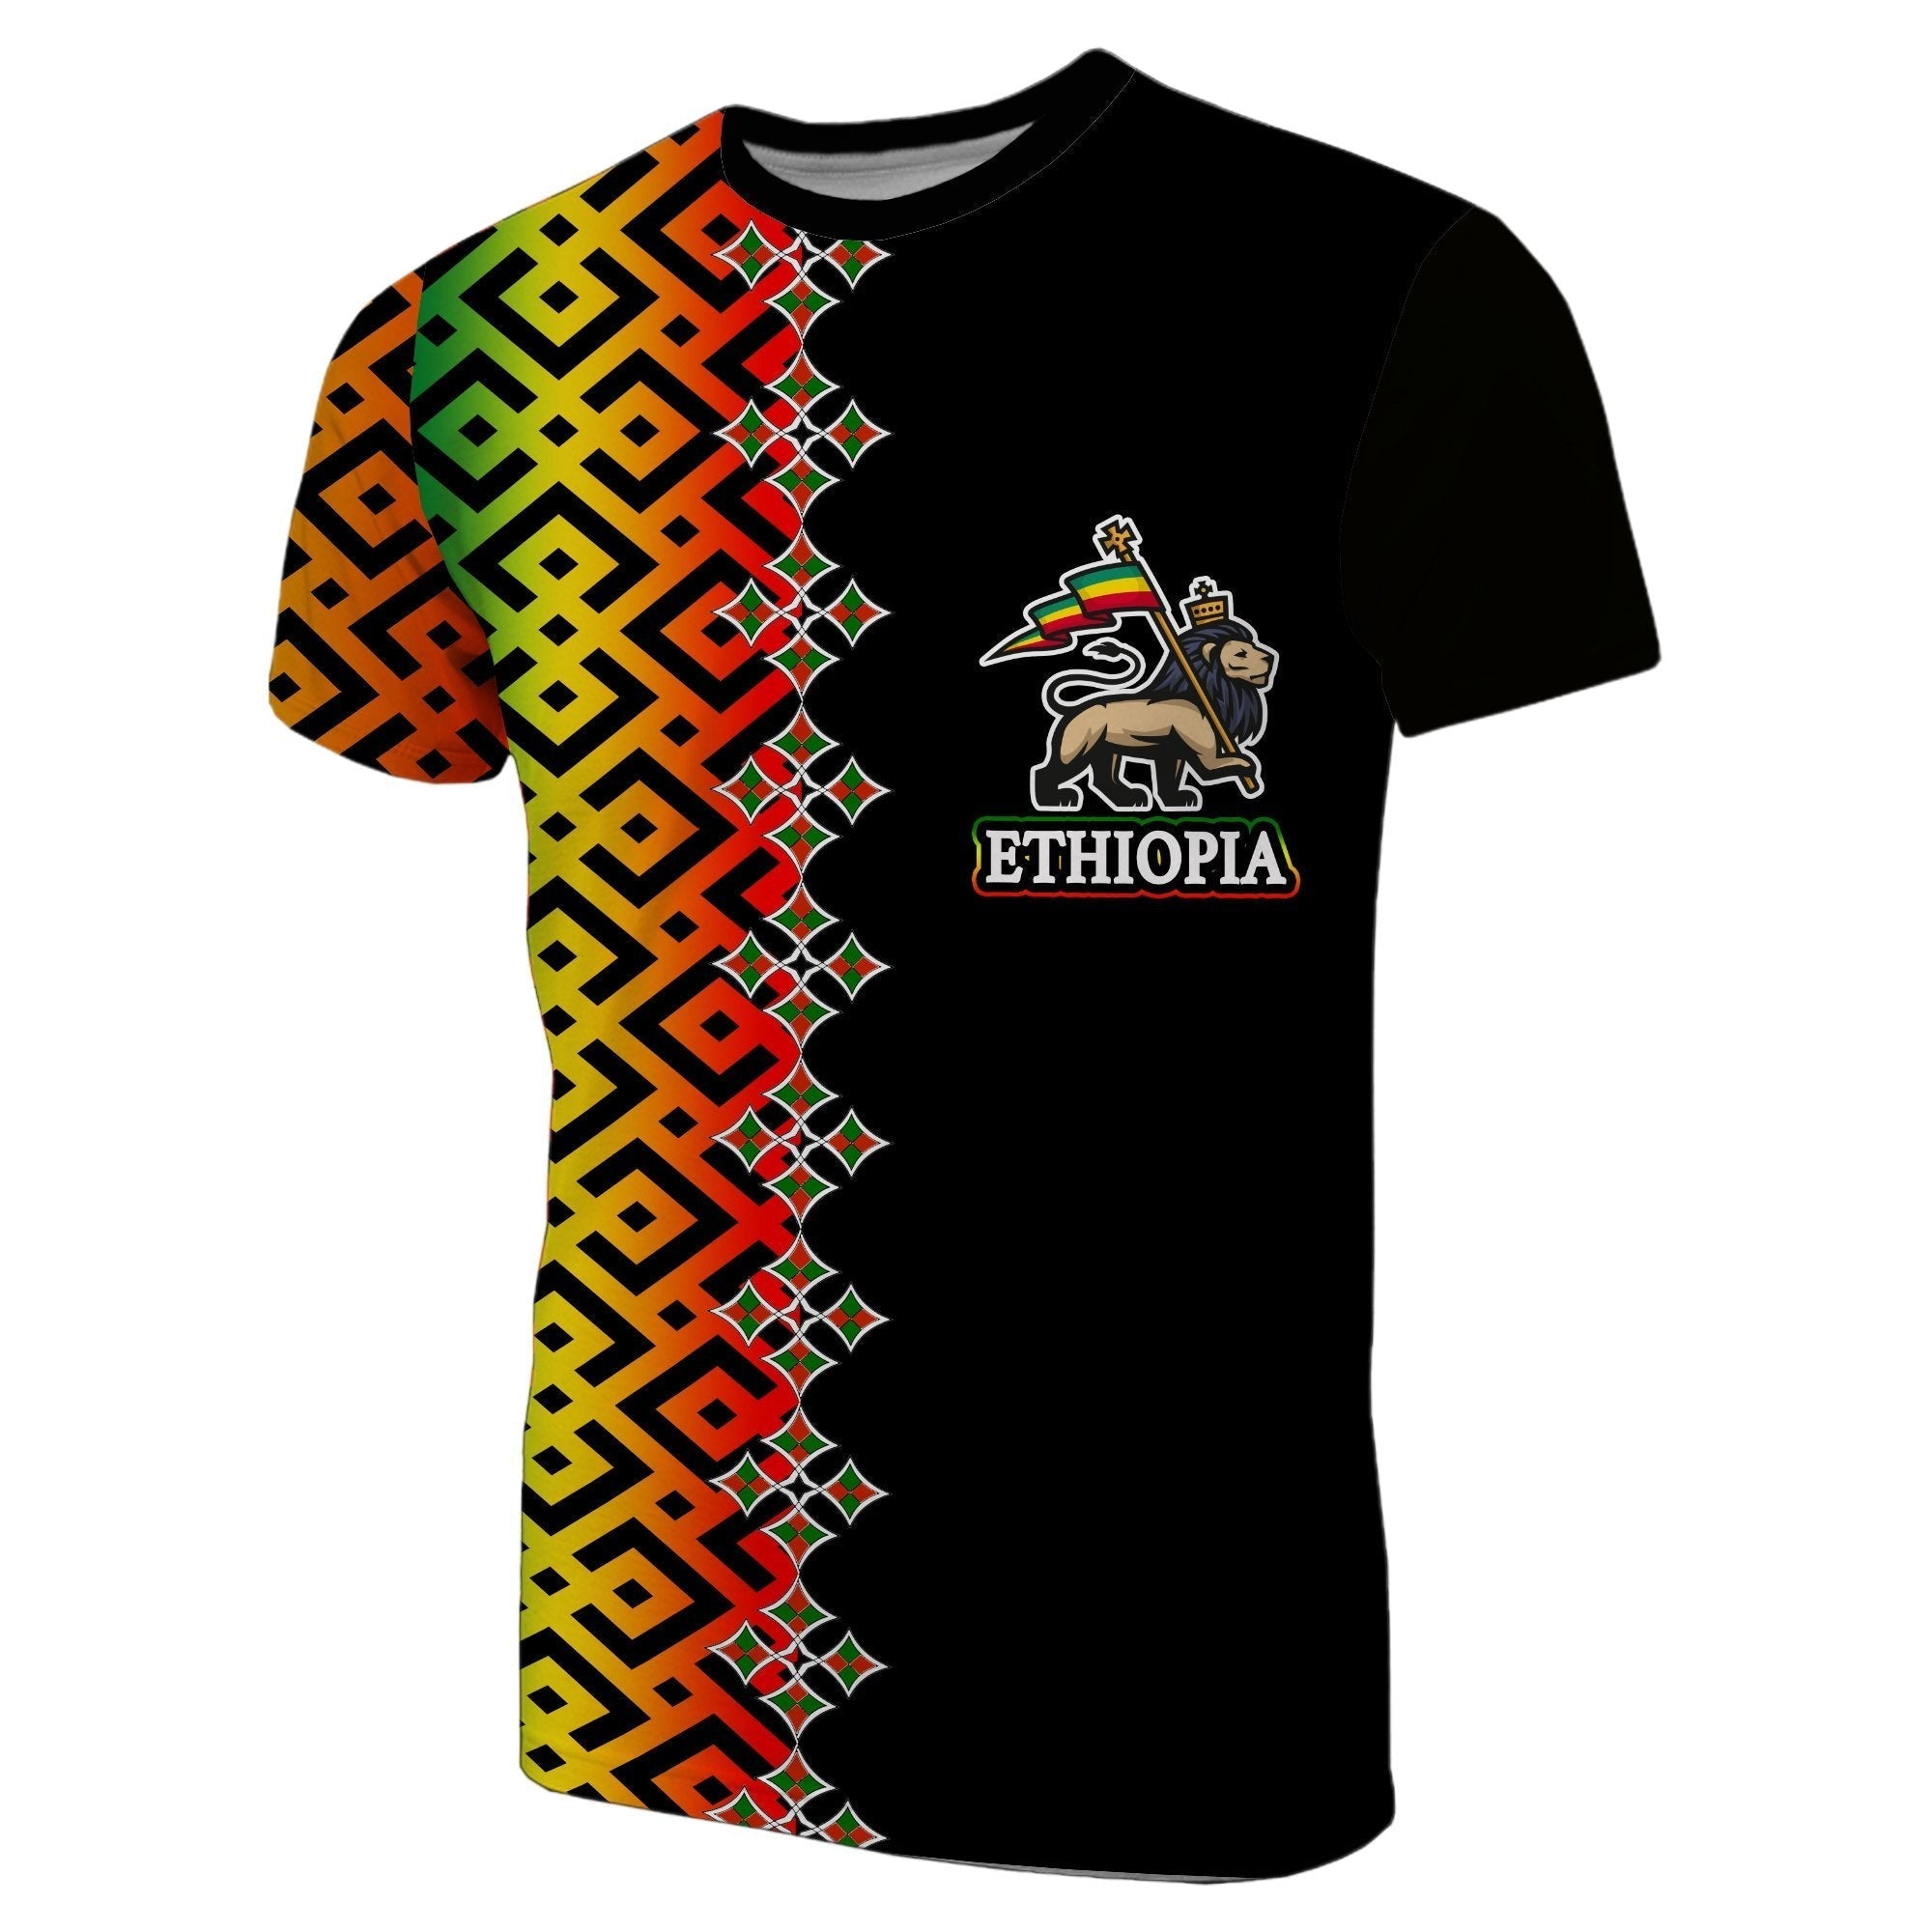 ethiopia-t-shirt-ethiopia-tilet-patterns